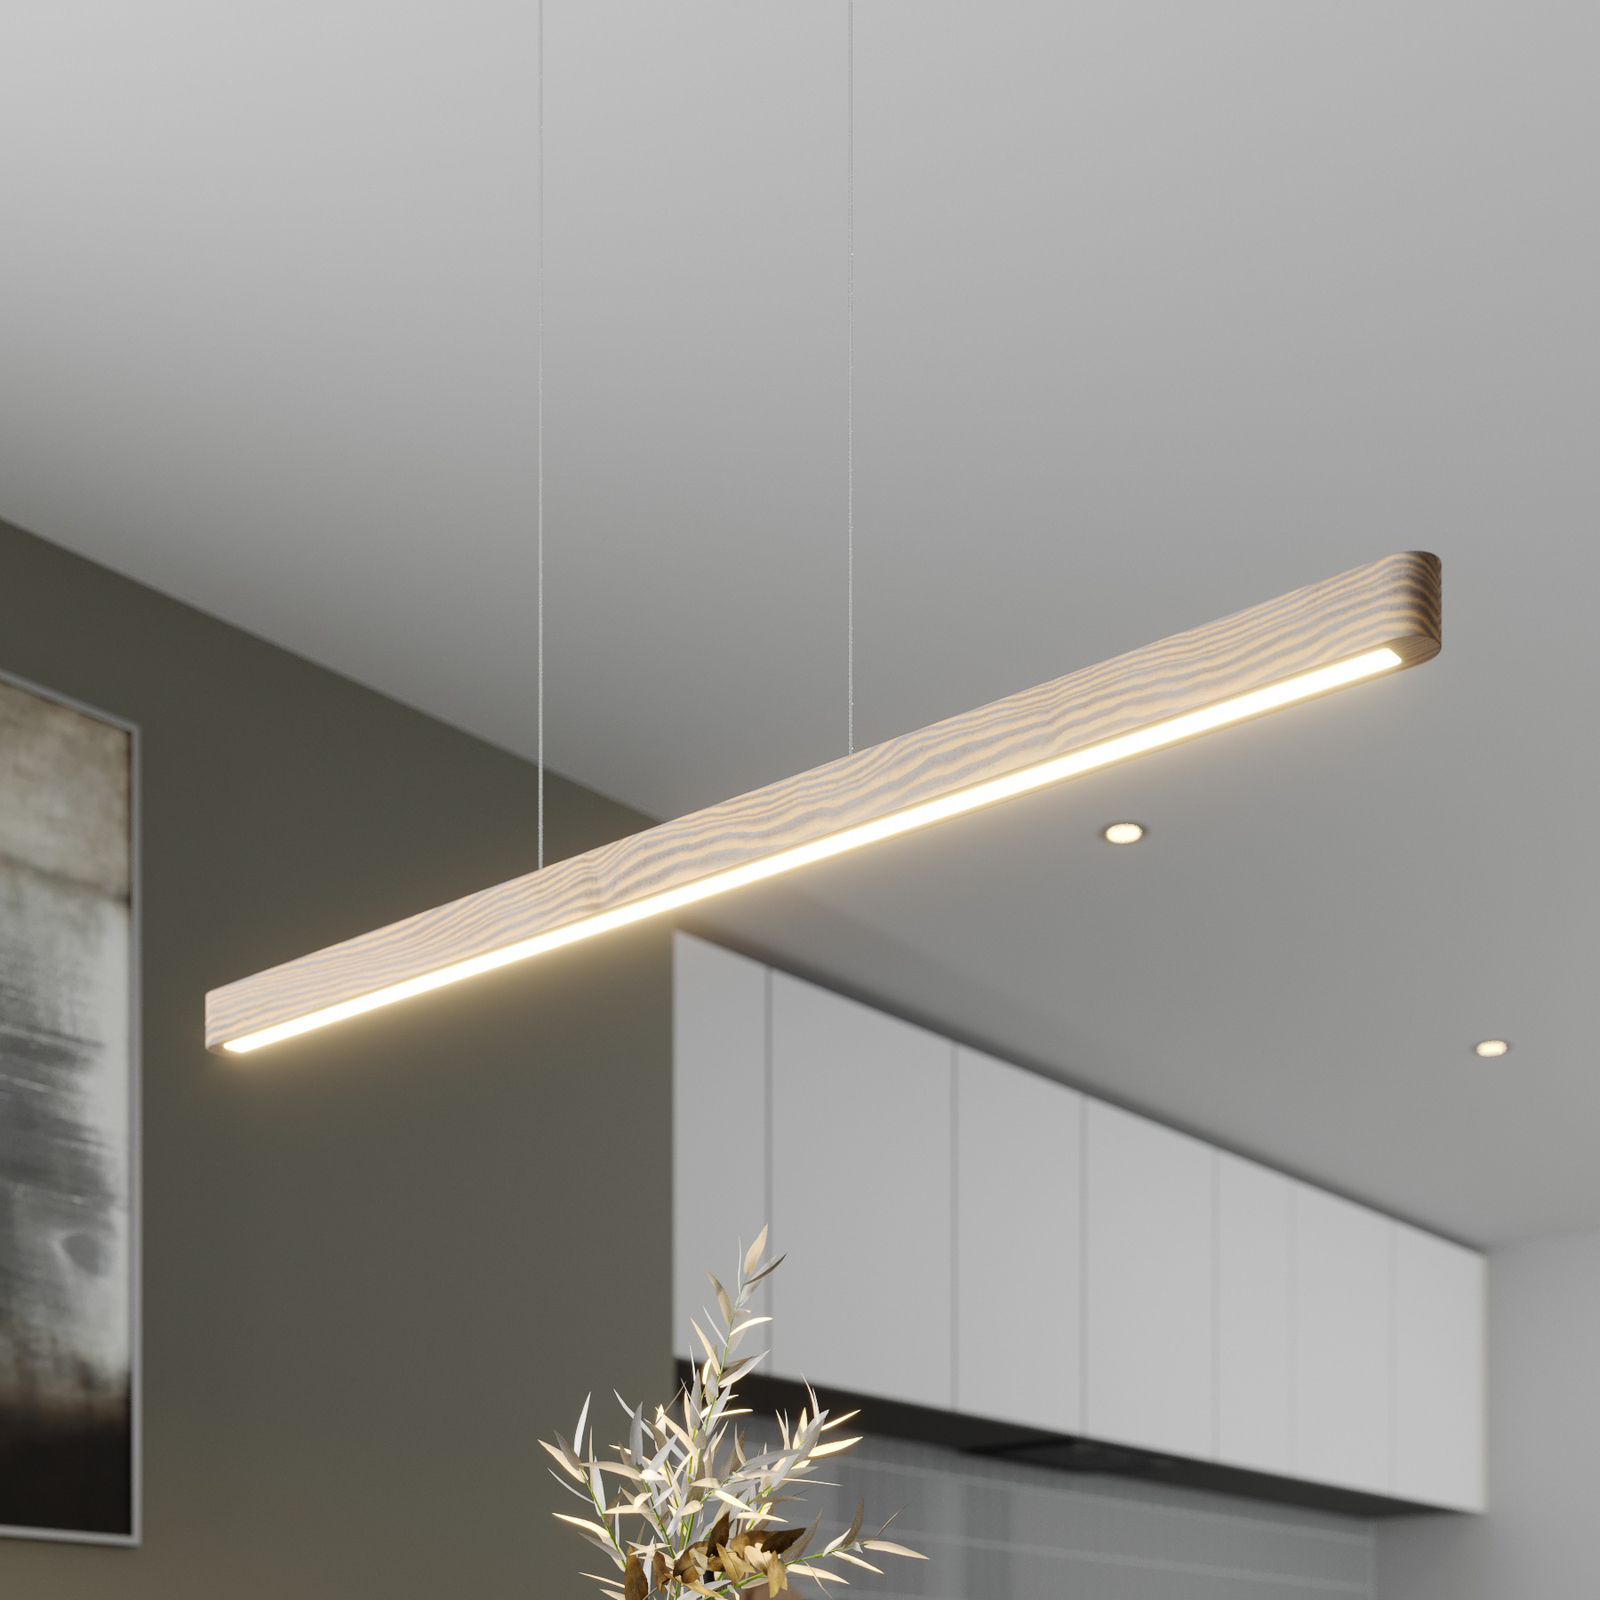 LED-hengelampe Forrestal, 90 cm lang